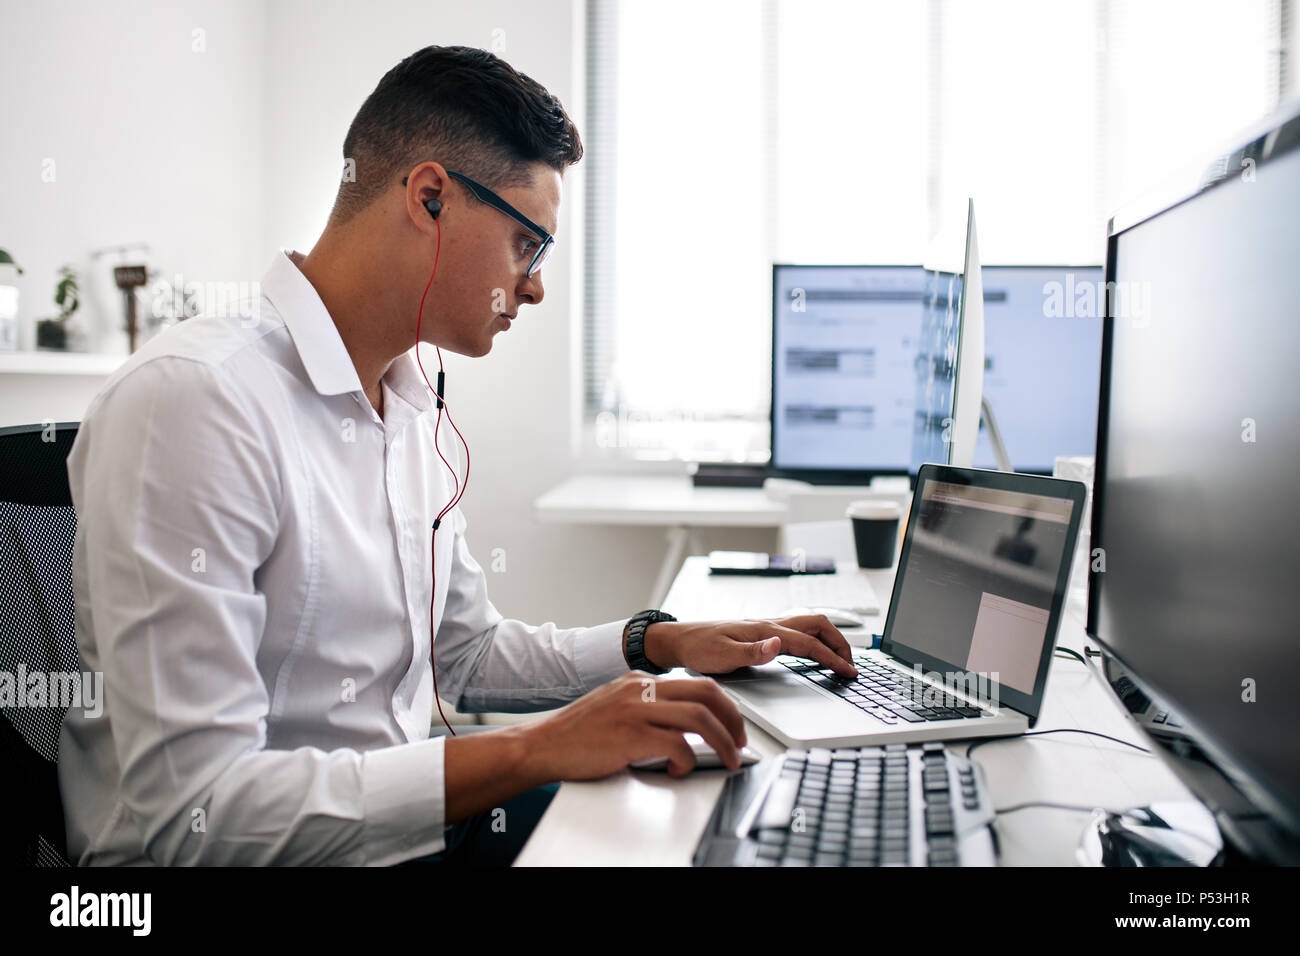 Desarrollador de software estaba sentado en su escritorio de oficina trabajando en el portátil usando auriculares. Llevar gafas hombre trabajando en un PC en la oficina. Foto de stock